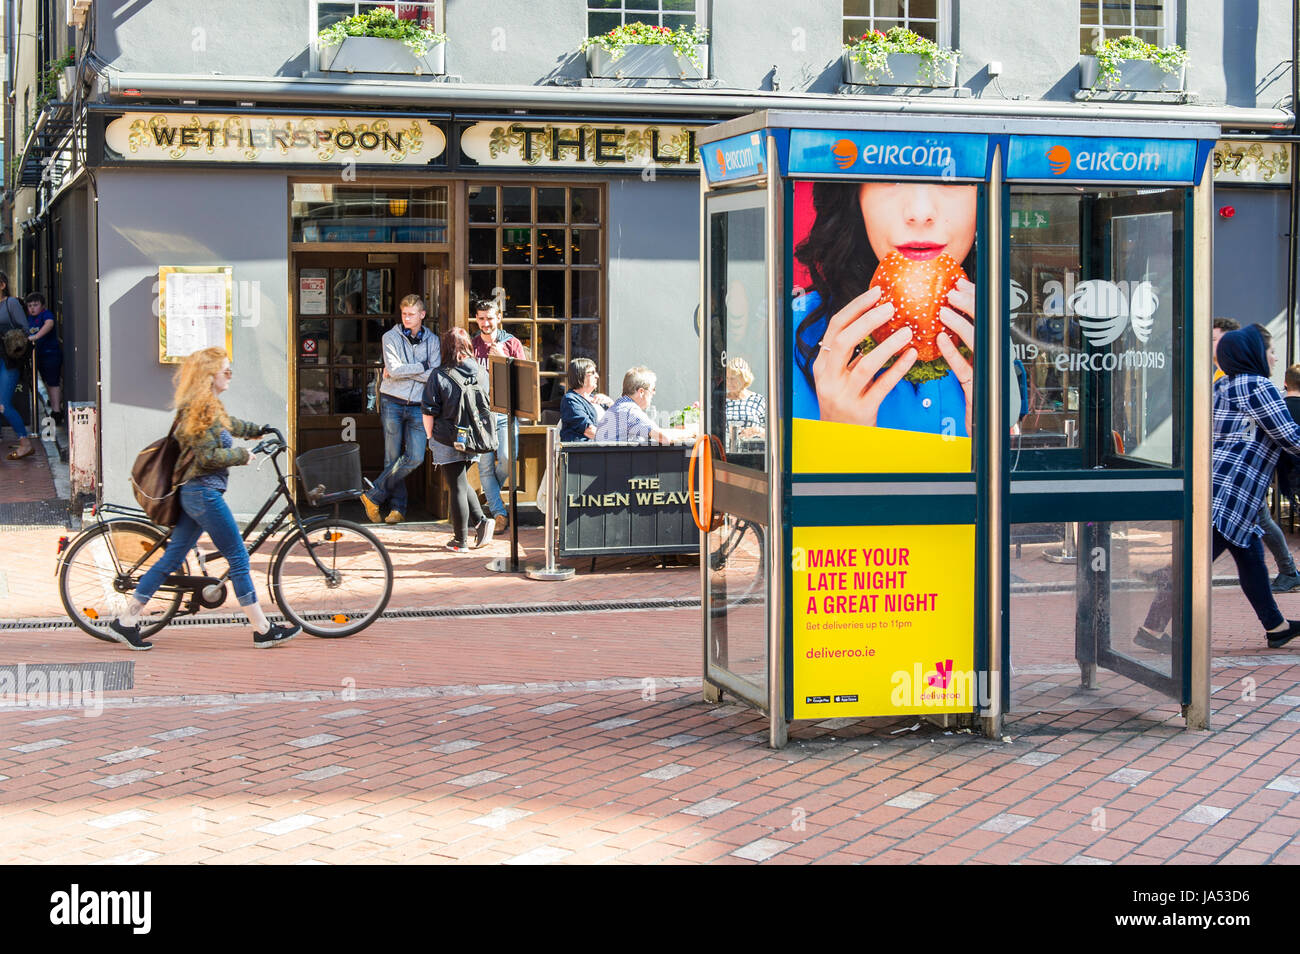 Deliveroo Anzeige auf ein öffentliches Telefon Telefonzelle in Cork, Irland mit Menschen oder Ehrenbreitstein Pub. Stockfoto